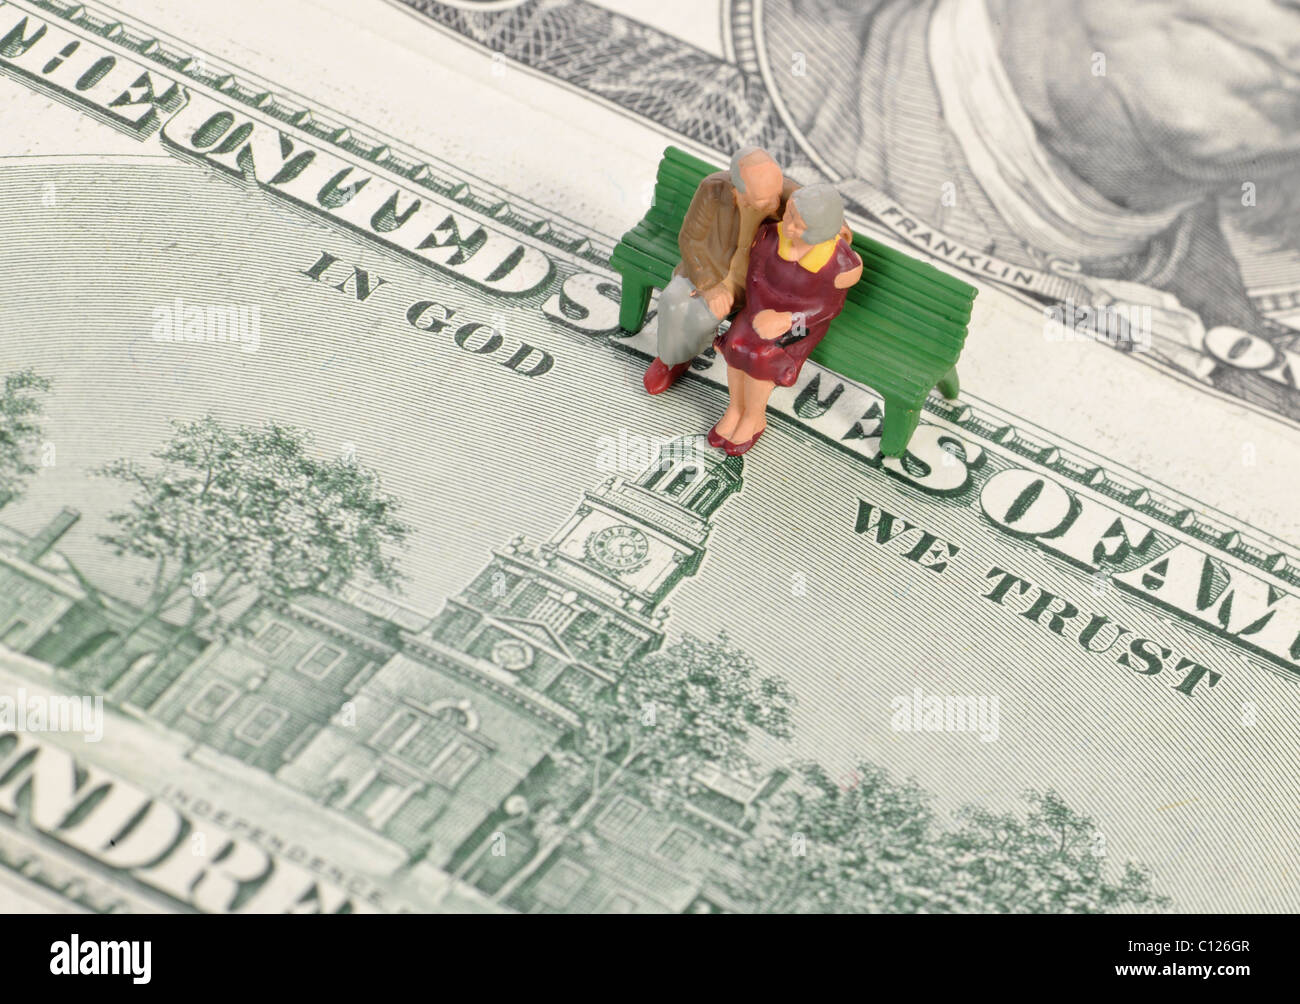 Rentner-Miniatur Figuren am 100-Dollar-Scheine, Motto IN GOD WE TRUST, symbolisches Bild für Rente, Altersvorsorge Stockfoto